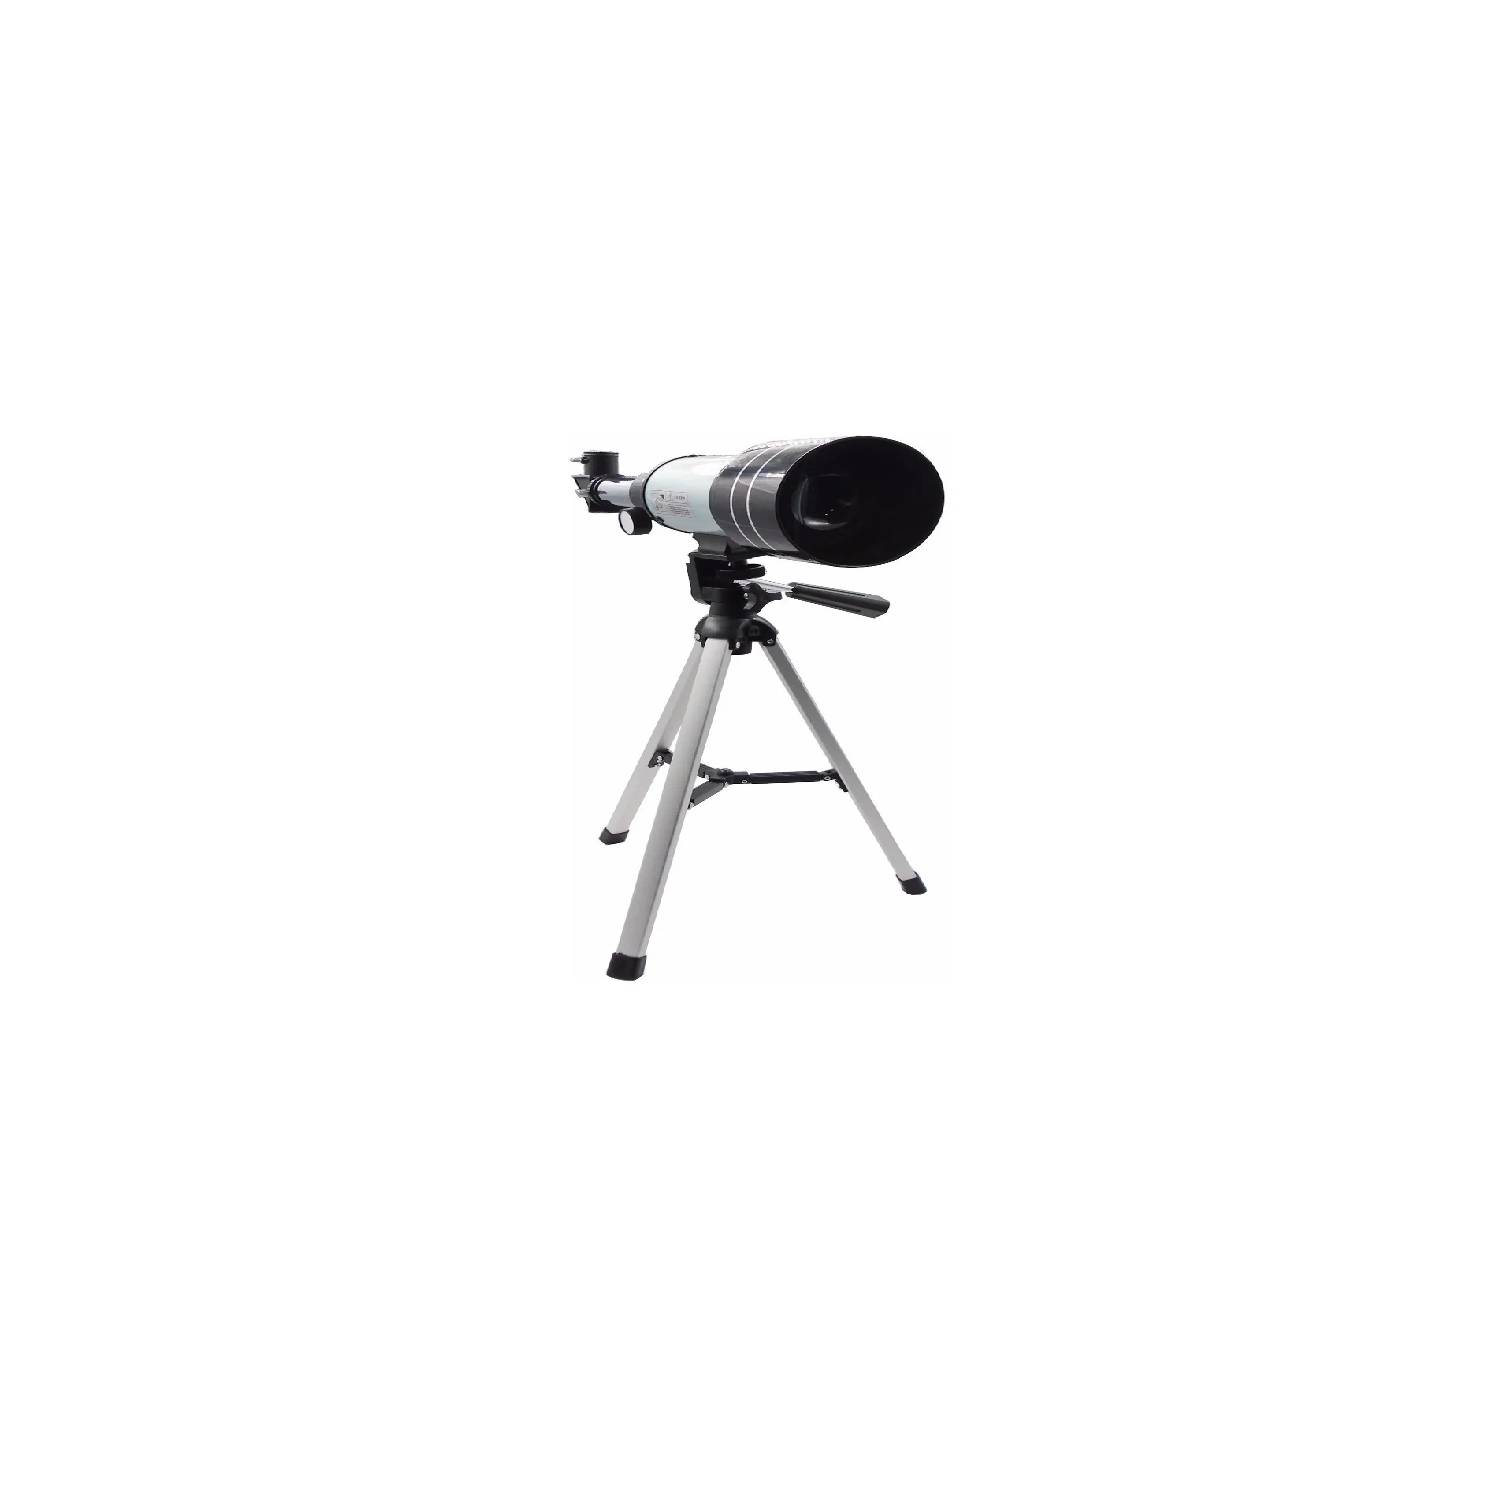 Telescopio Astronómico 300 X 70mm + Oculares